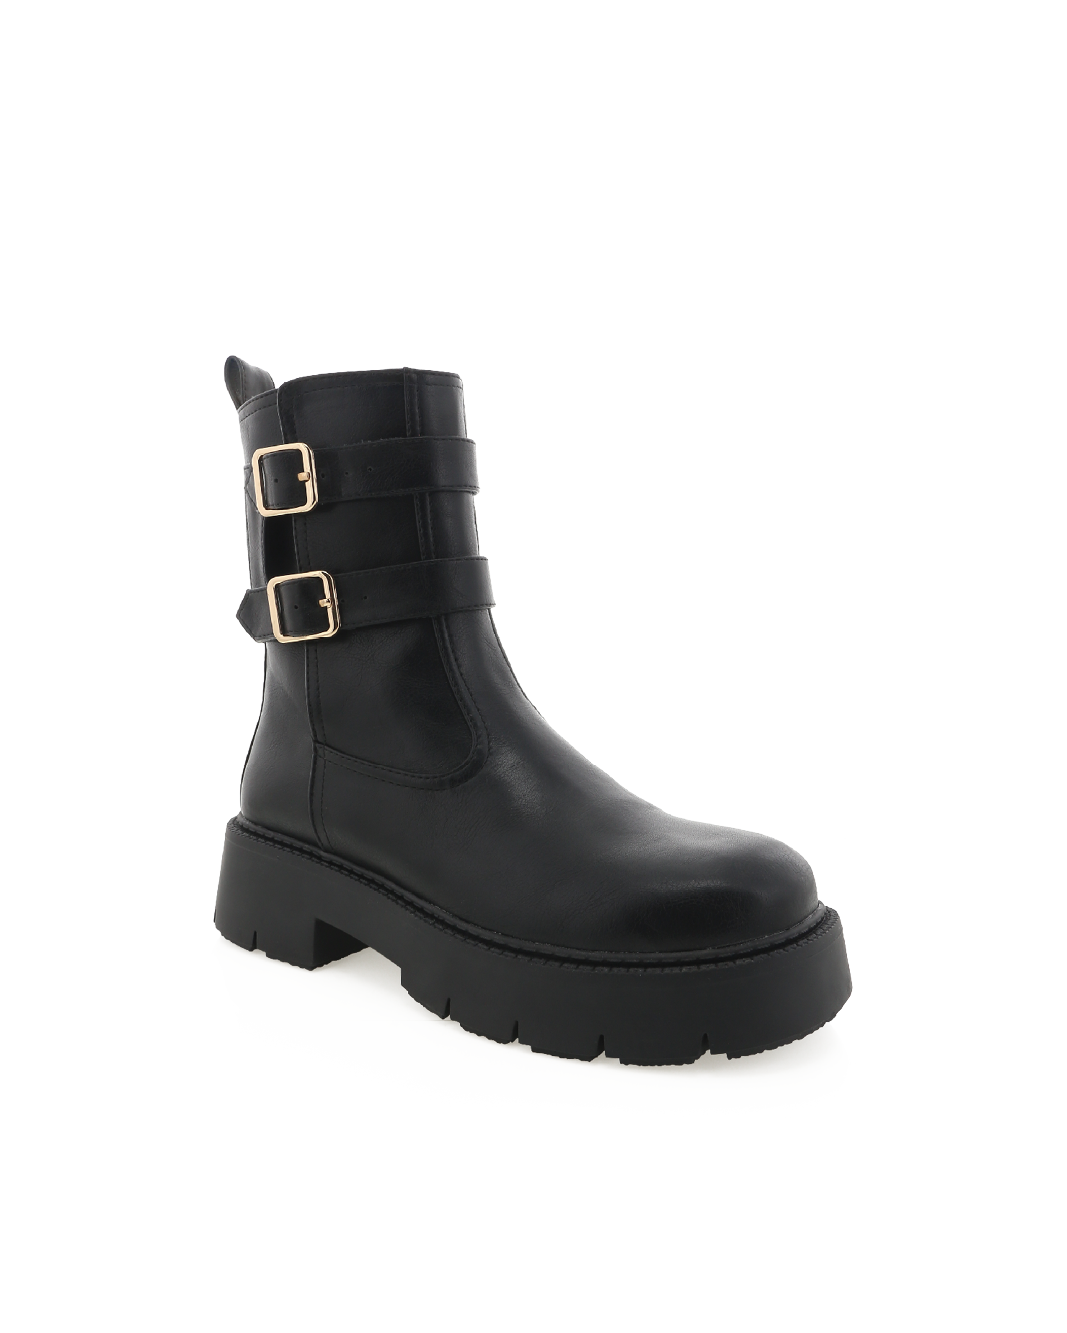 RHEMA - BLACK-Boots-Billini-Billini